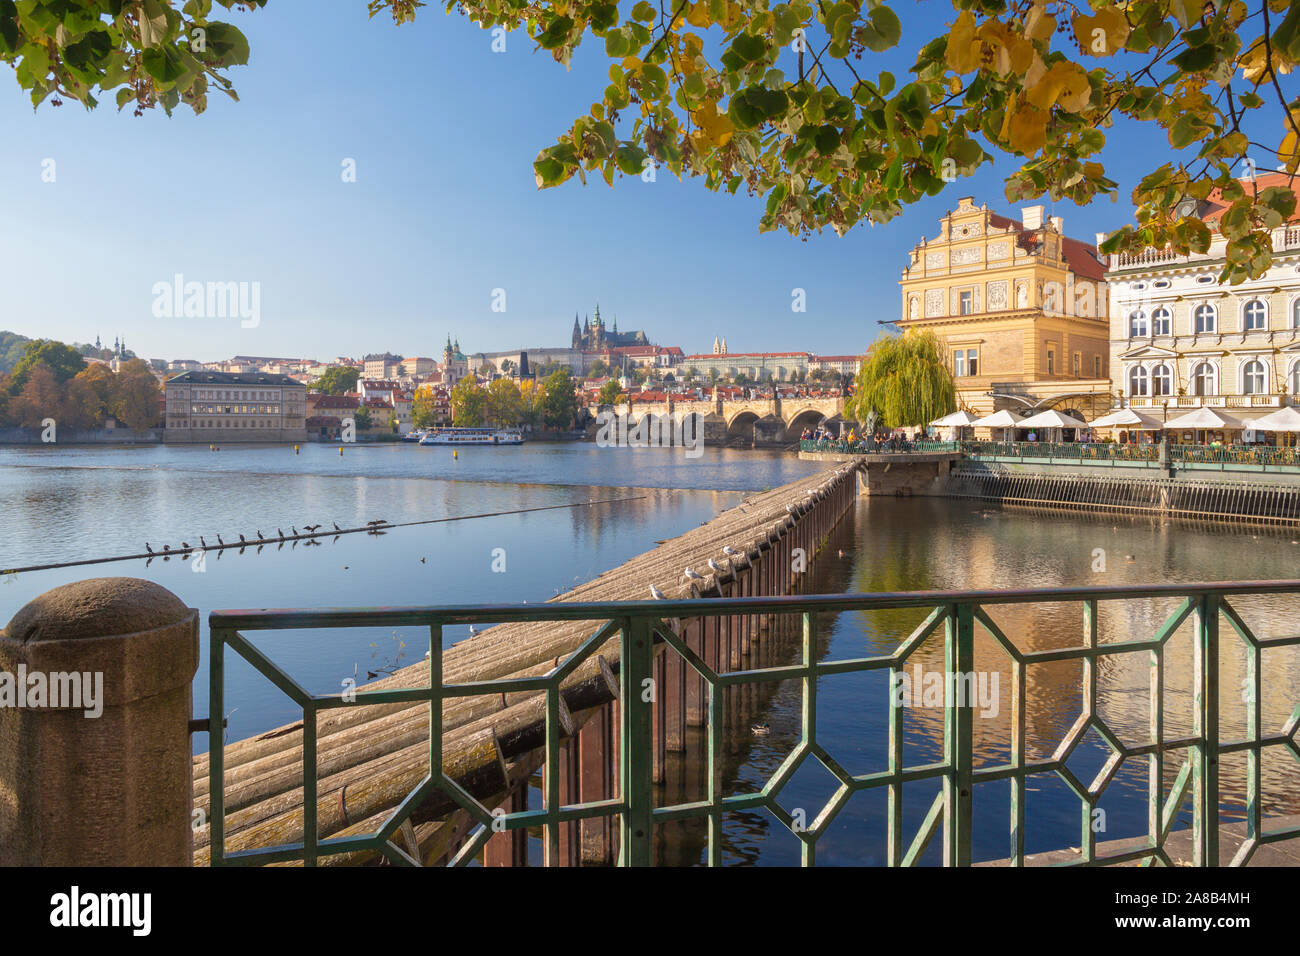 Praga - La buildind di Bedrich Smetana Museum e il Ponte Carlo, il castello e la cattedrale in background. Foto Stock